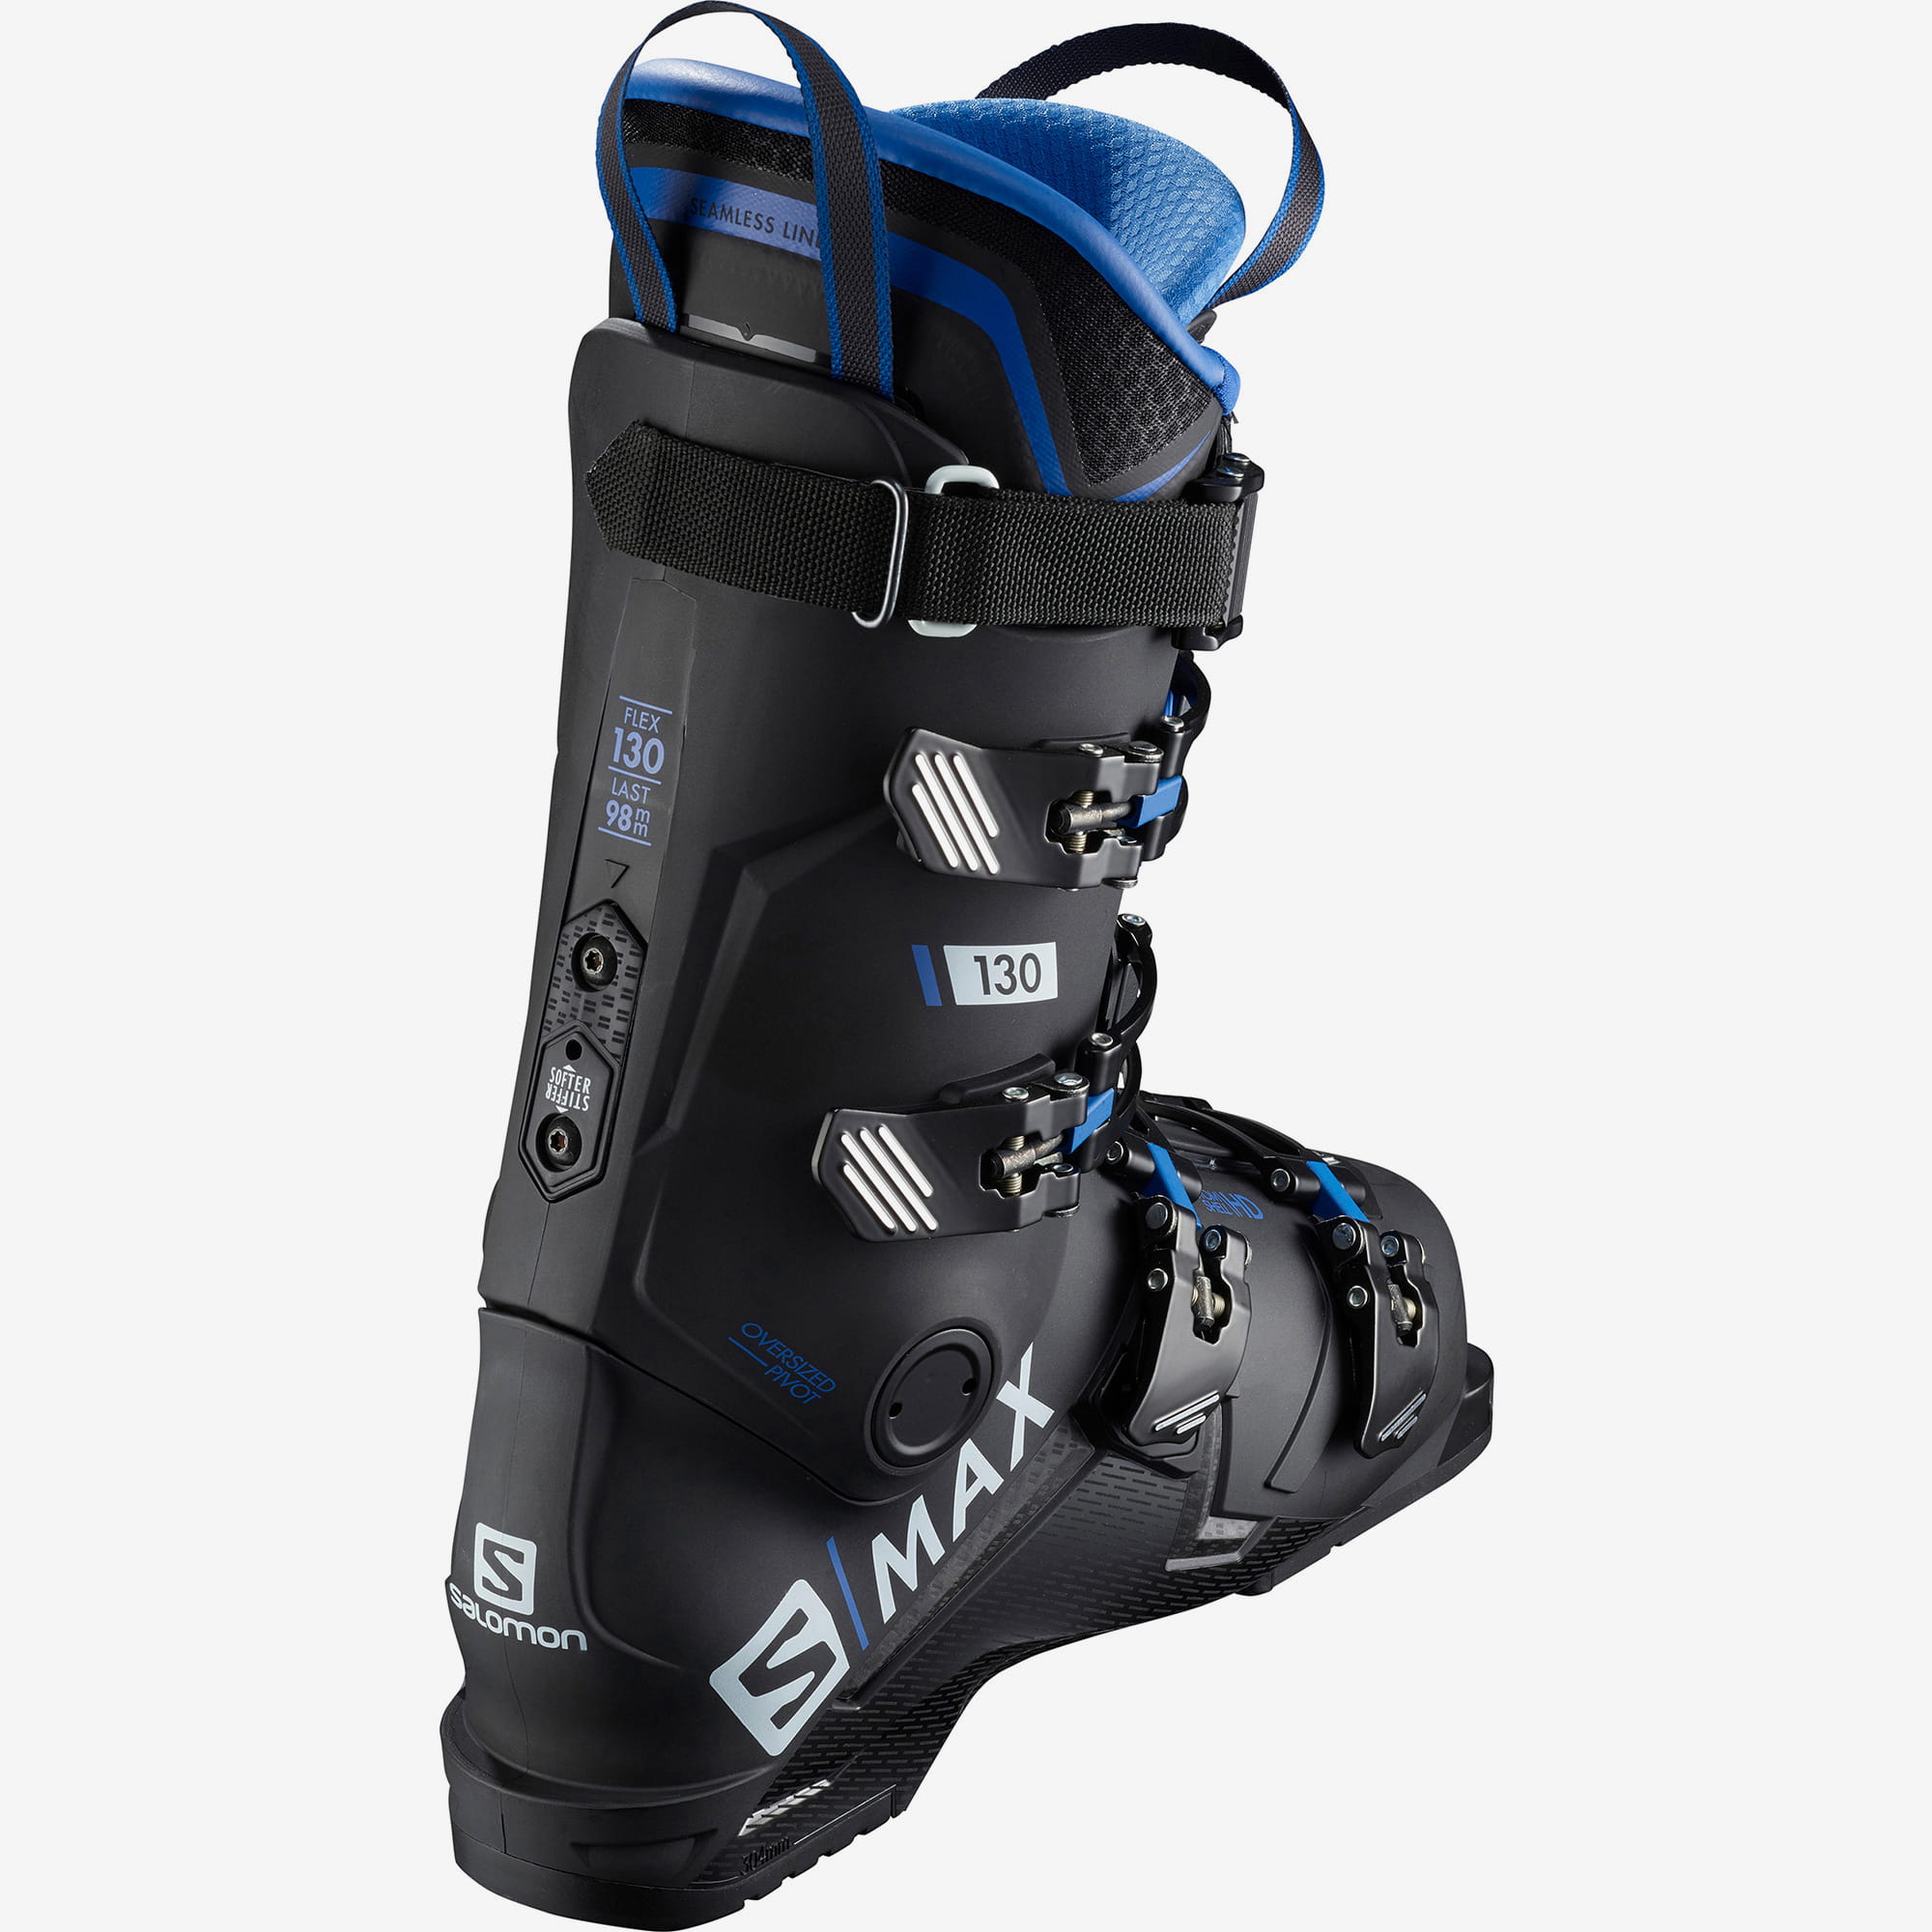 Ботинки горнолыжные Salomon 19-20 S/Max 130 Black/Race Blue, цвет черный, размер 25,0/25,5 см L40877600 - фото 6